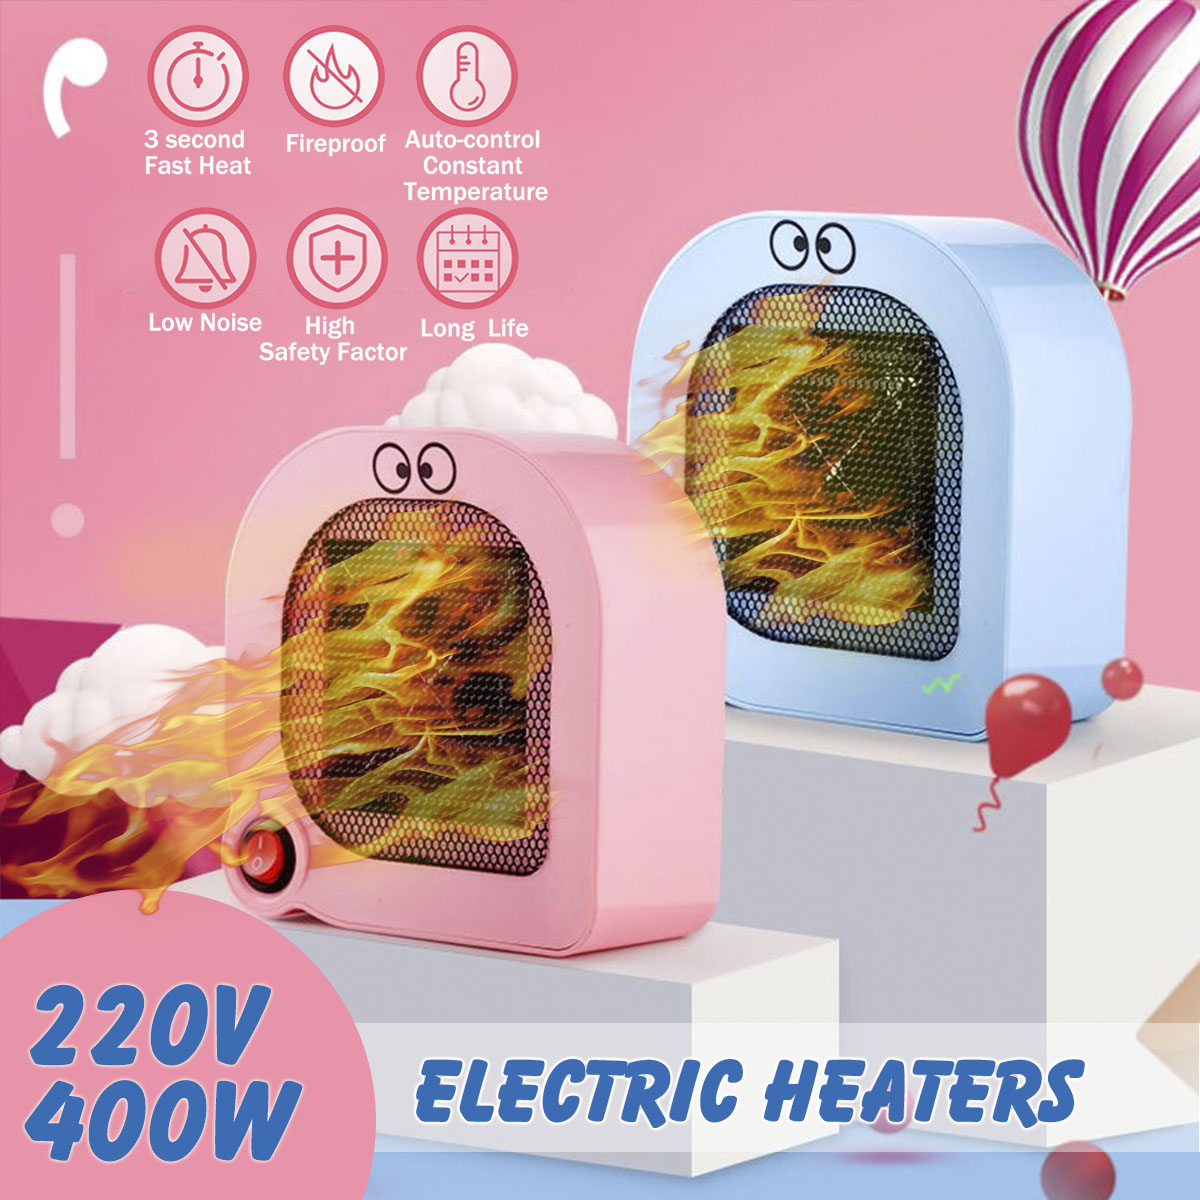 400W-Mini-Protable-Space-Heater-Cartoon-Type-Desktop-Electric-Heater-Fan-Fast-Heating-1386112-1